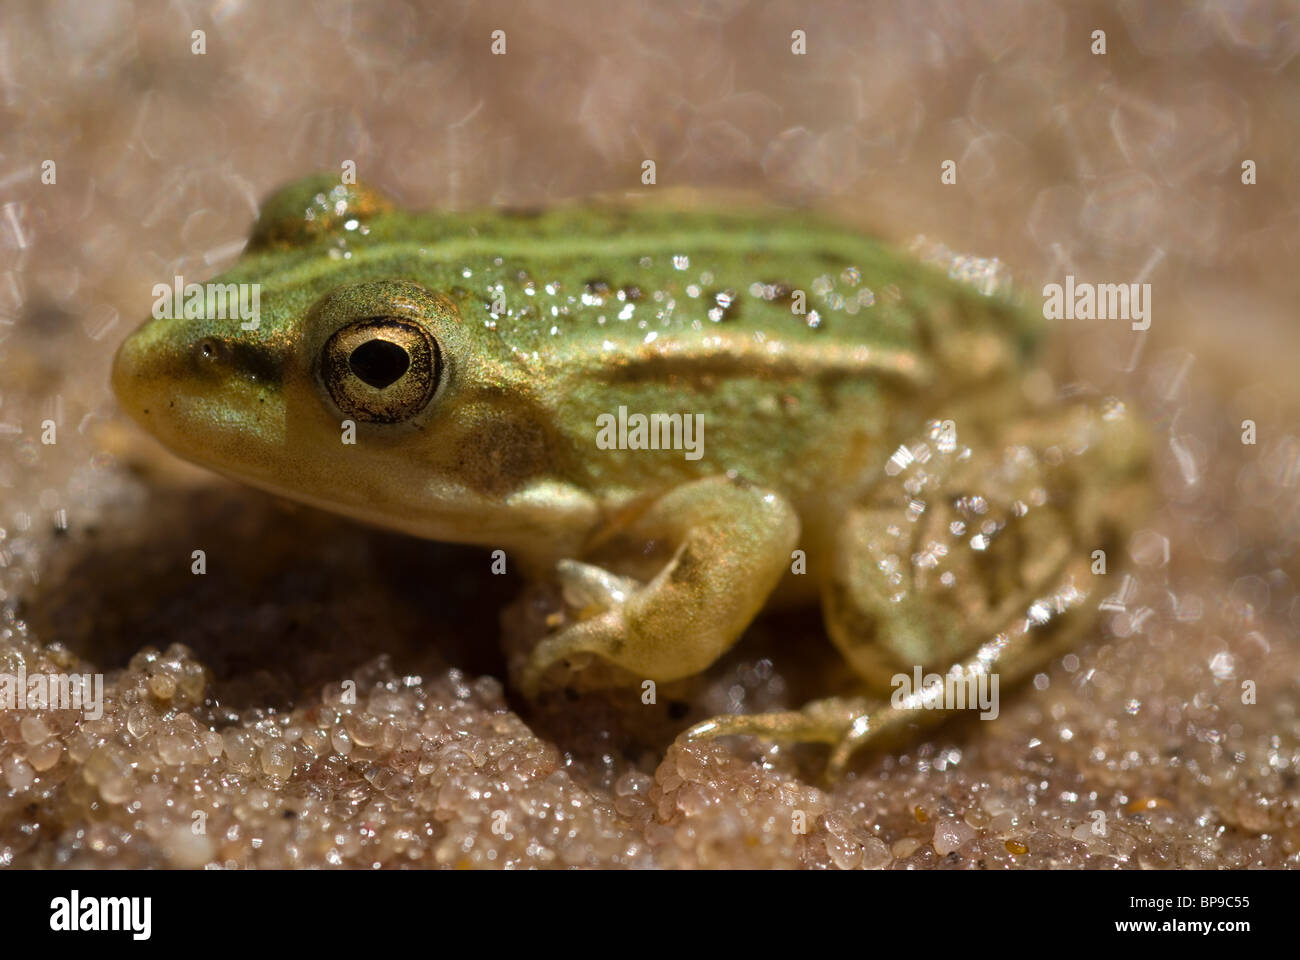 Young Iberian Green Frog (Rana perezi) Stock Photo